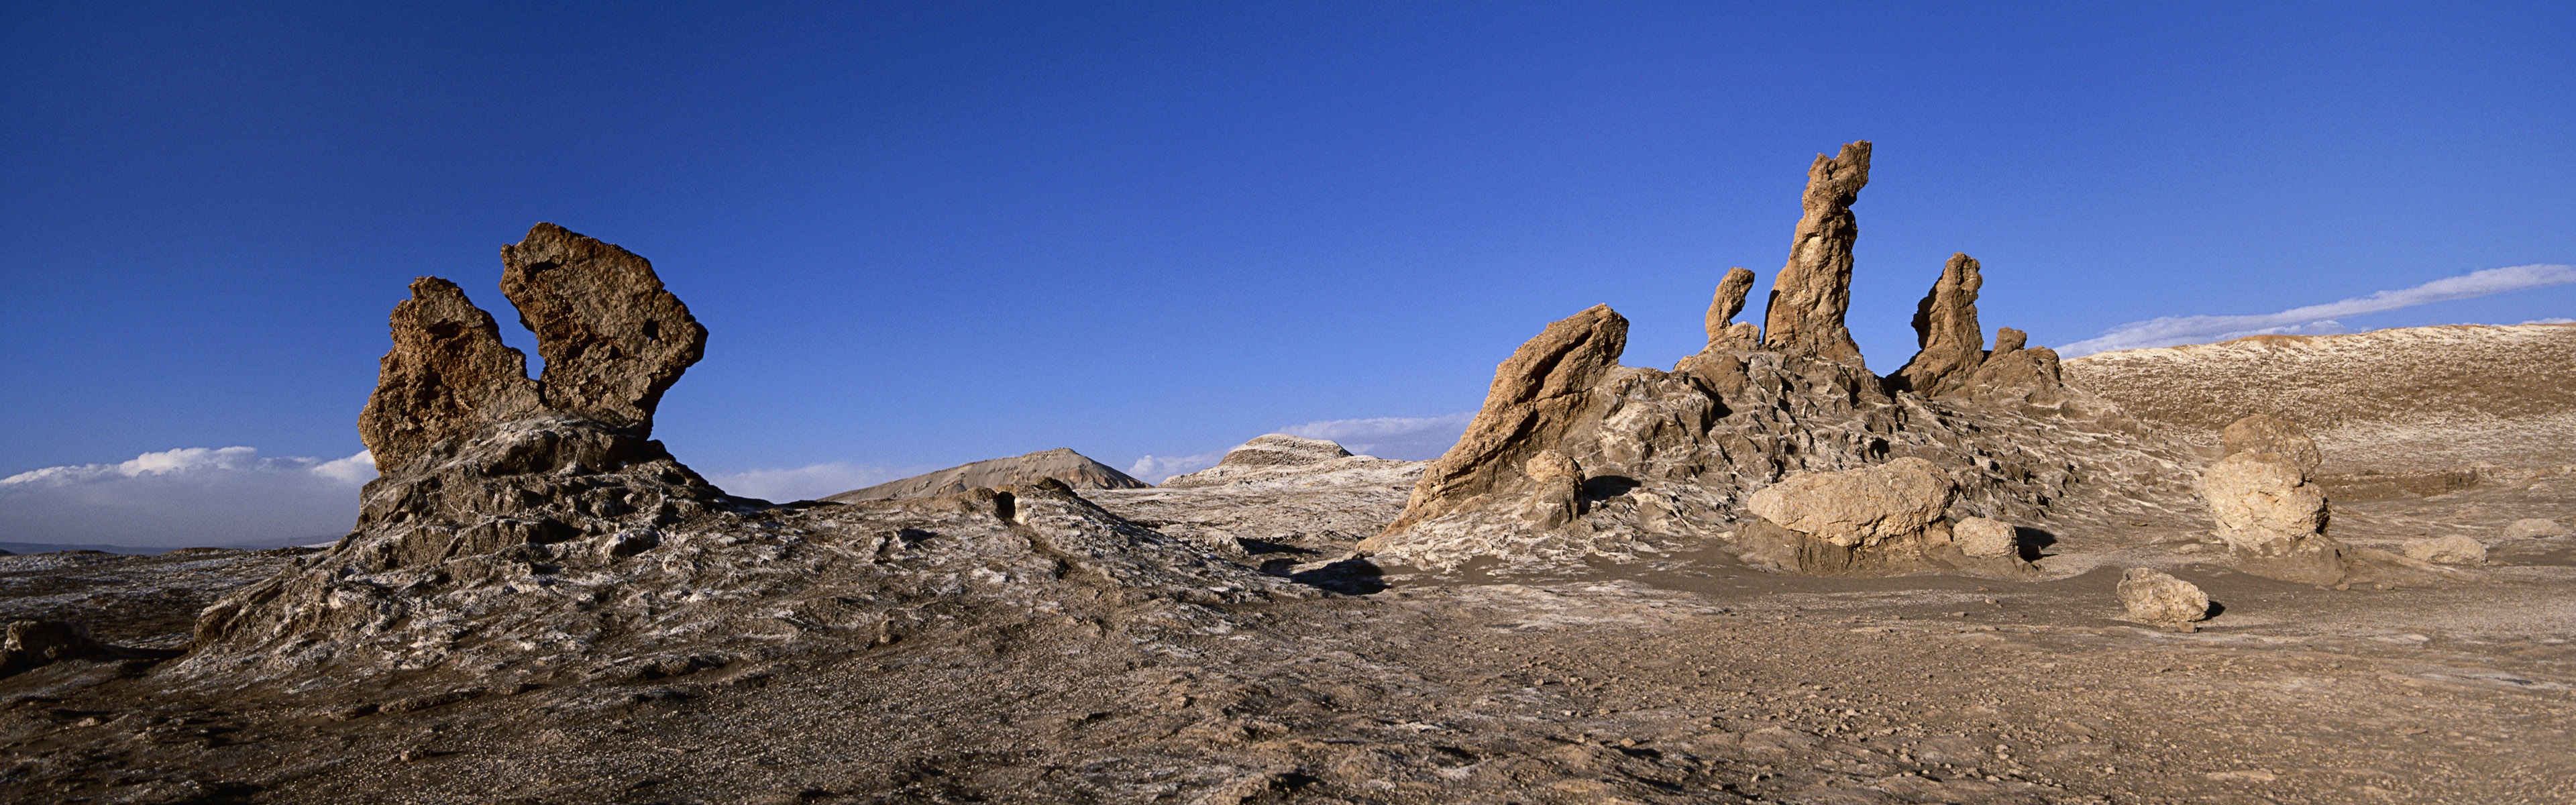 Горячие и засушливые пустыни, Windows 8 панорамные картинки на рабочий стол #11 - 3840x1200